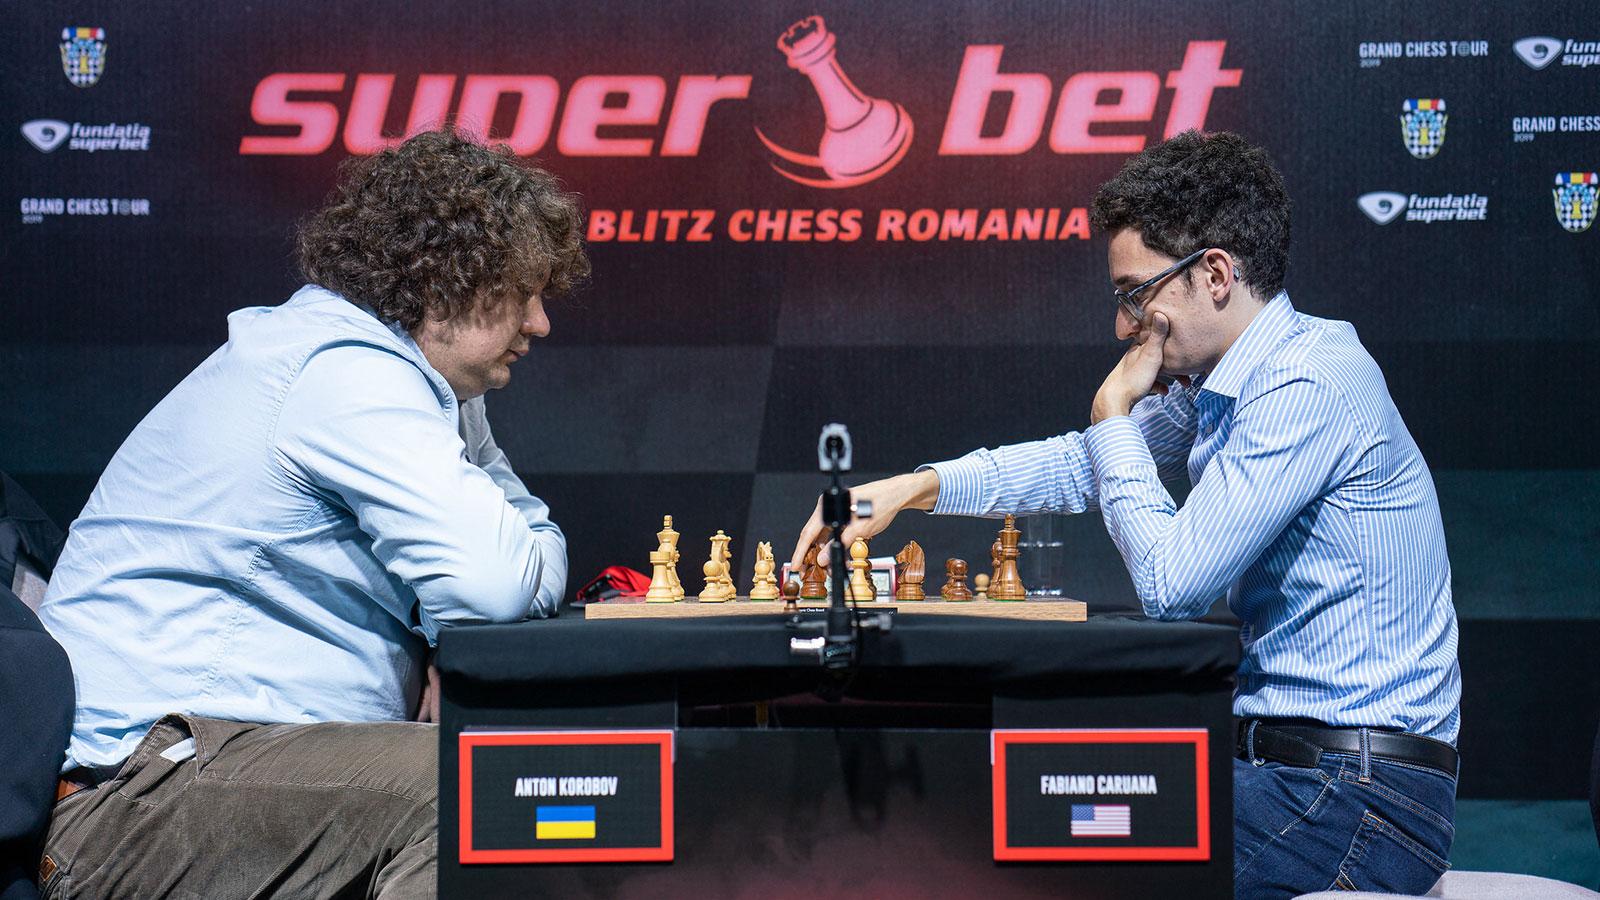 Fundacja Superbet zostaje głównym partnerem Grand Chess Tour 2021